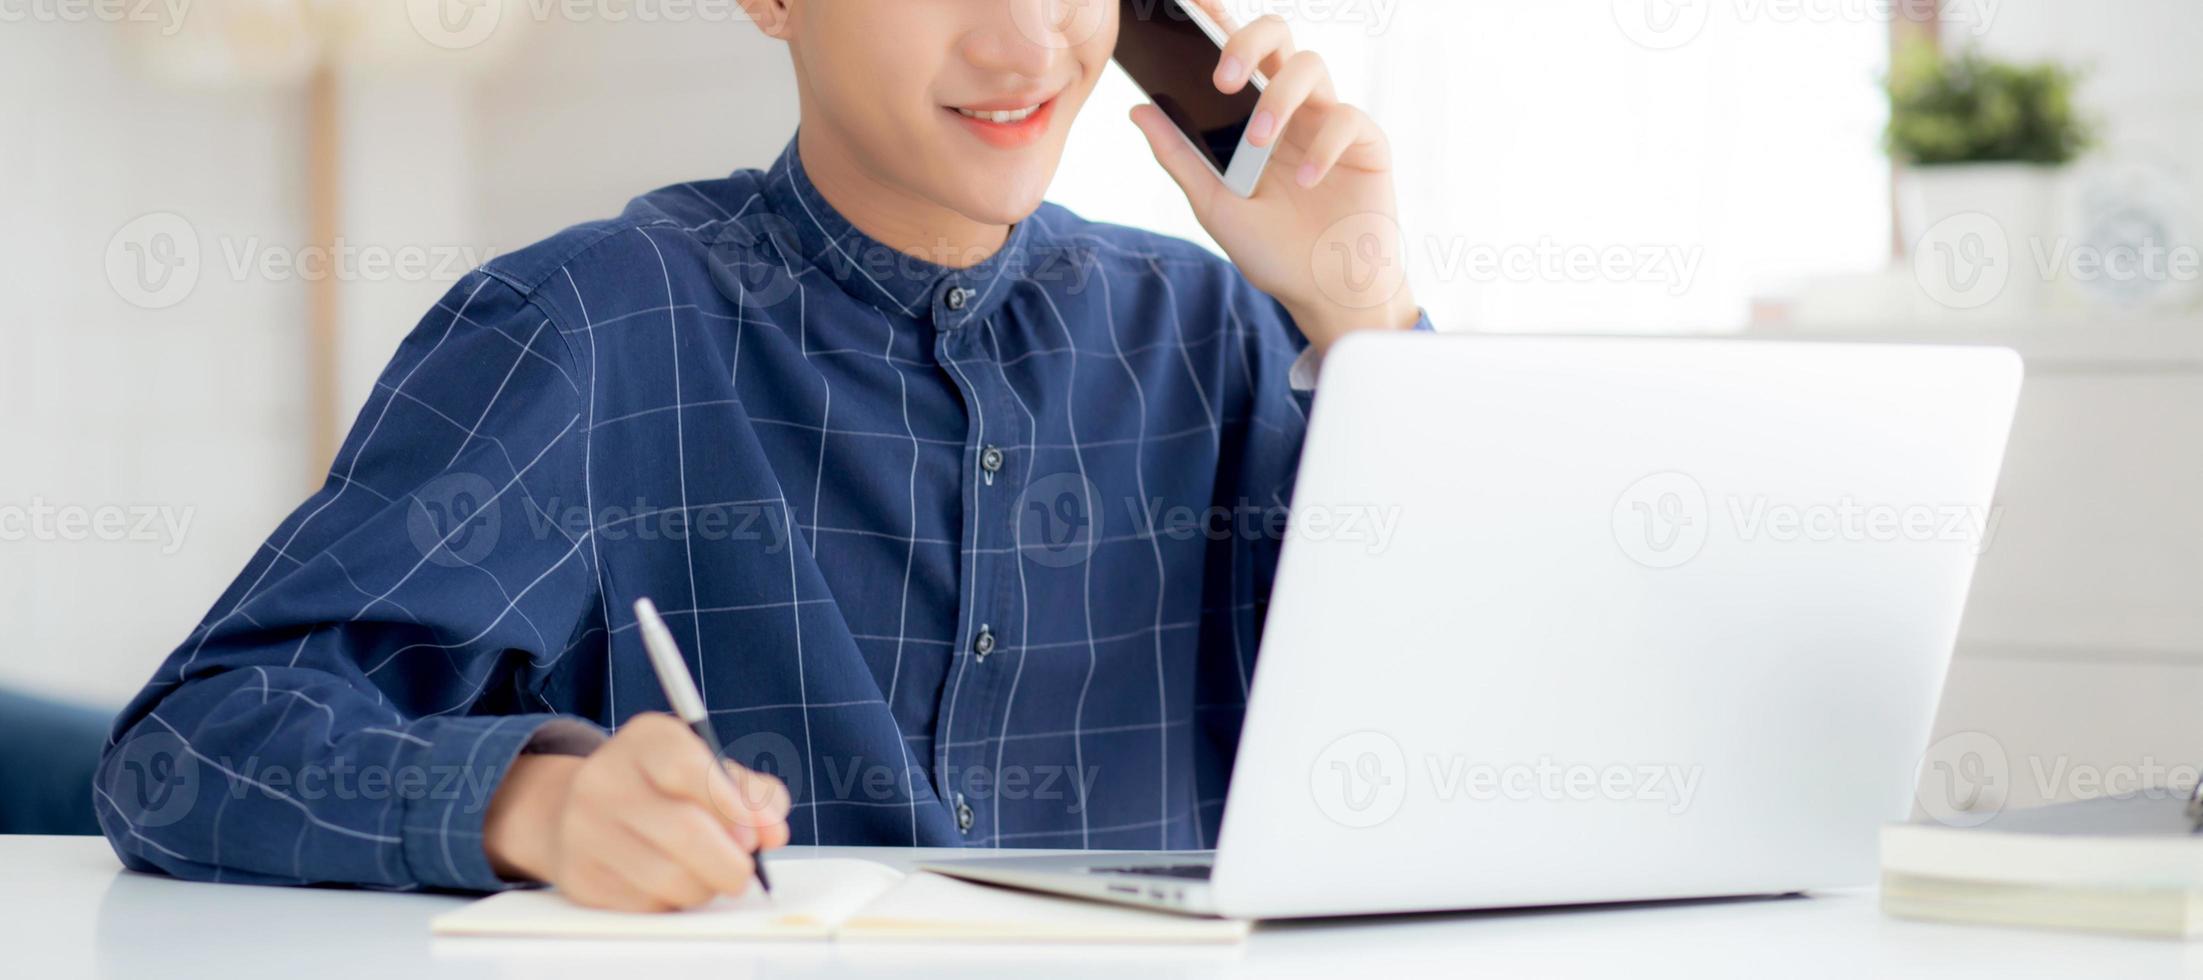 jeune homme asiatique parlant au téléphone et travaillant à domicile avec un ordinateur portable, un homme indépendant écrivant sur un ordinateur portable et parlant sur un smartphone, restez à la maison, vie domestique, concept d'entreprise et de communication. photo